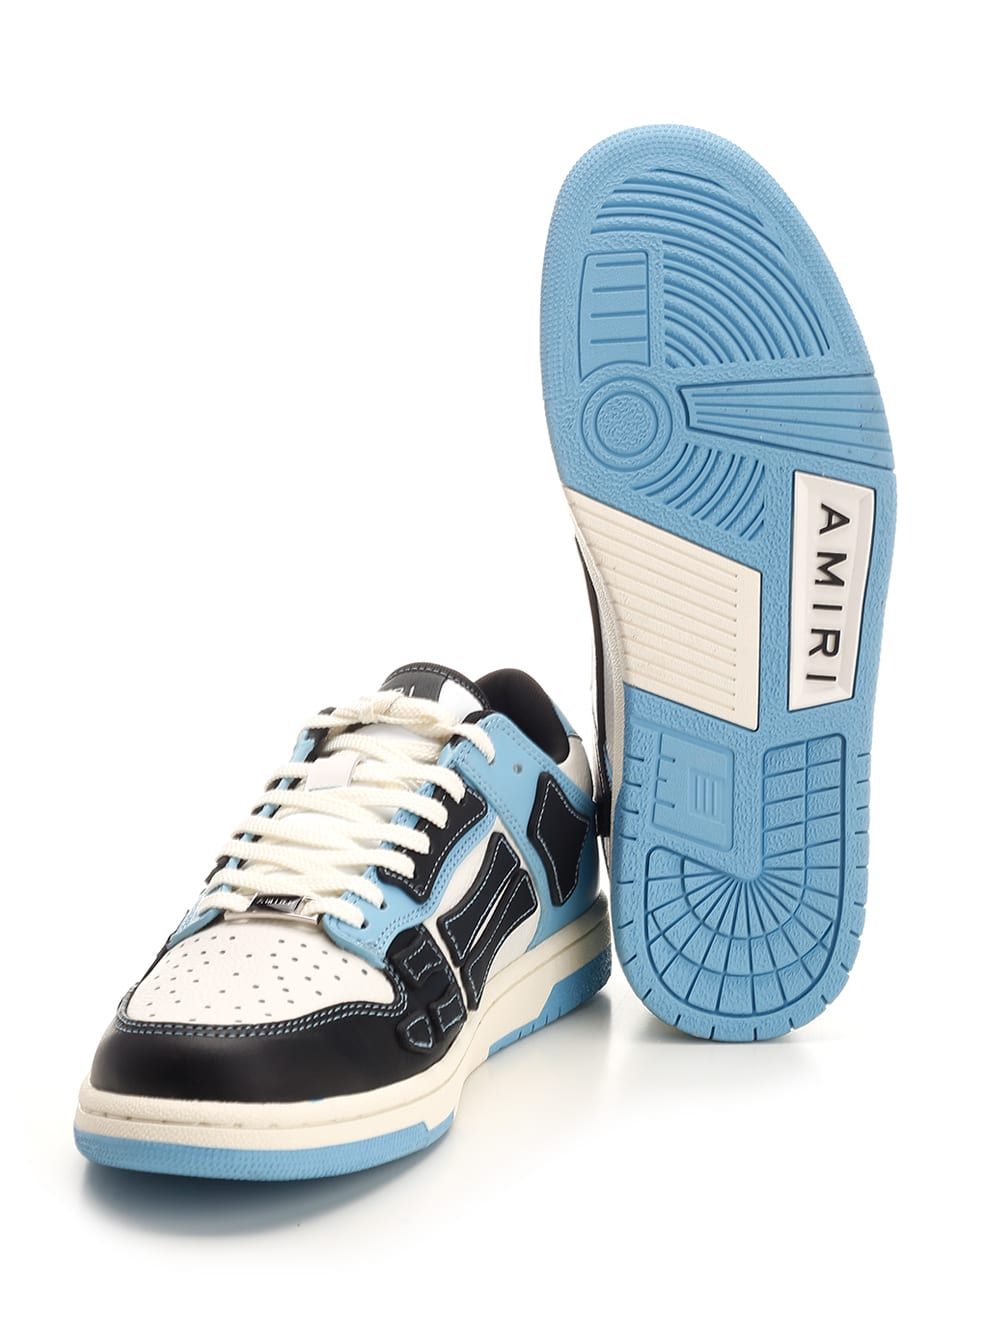 Shop Amiri Skel Sneakers In Blue/white